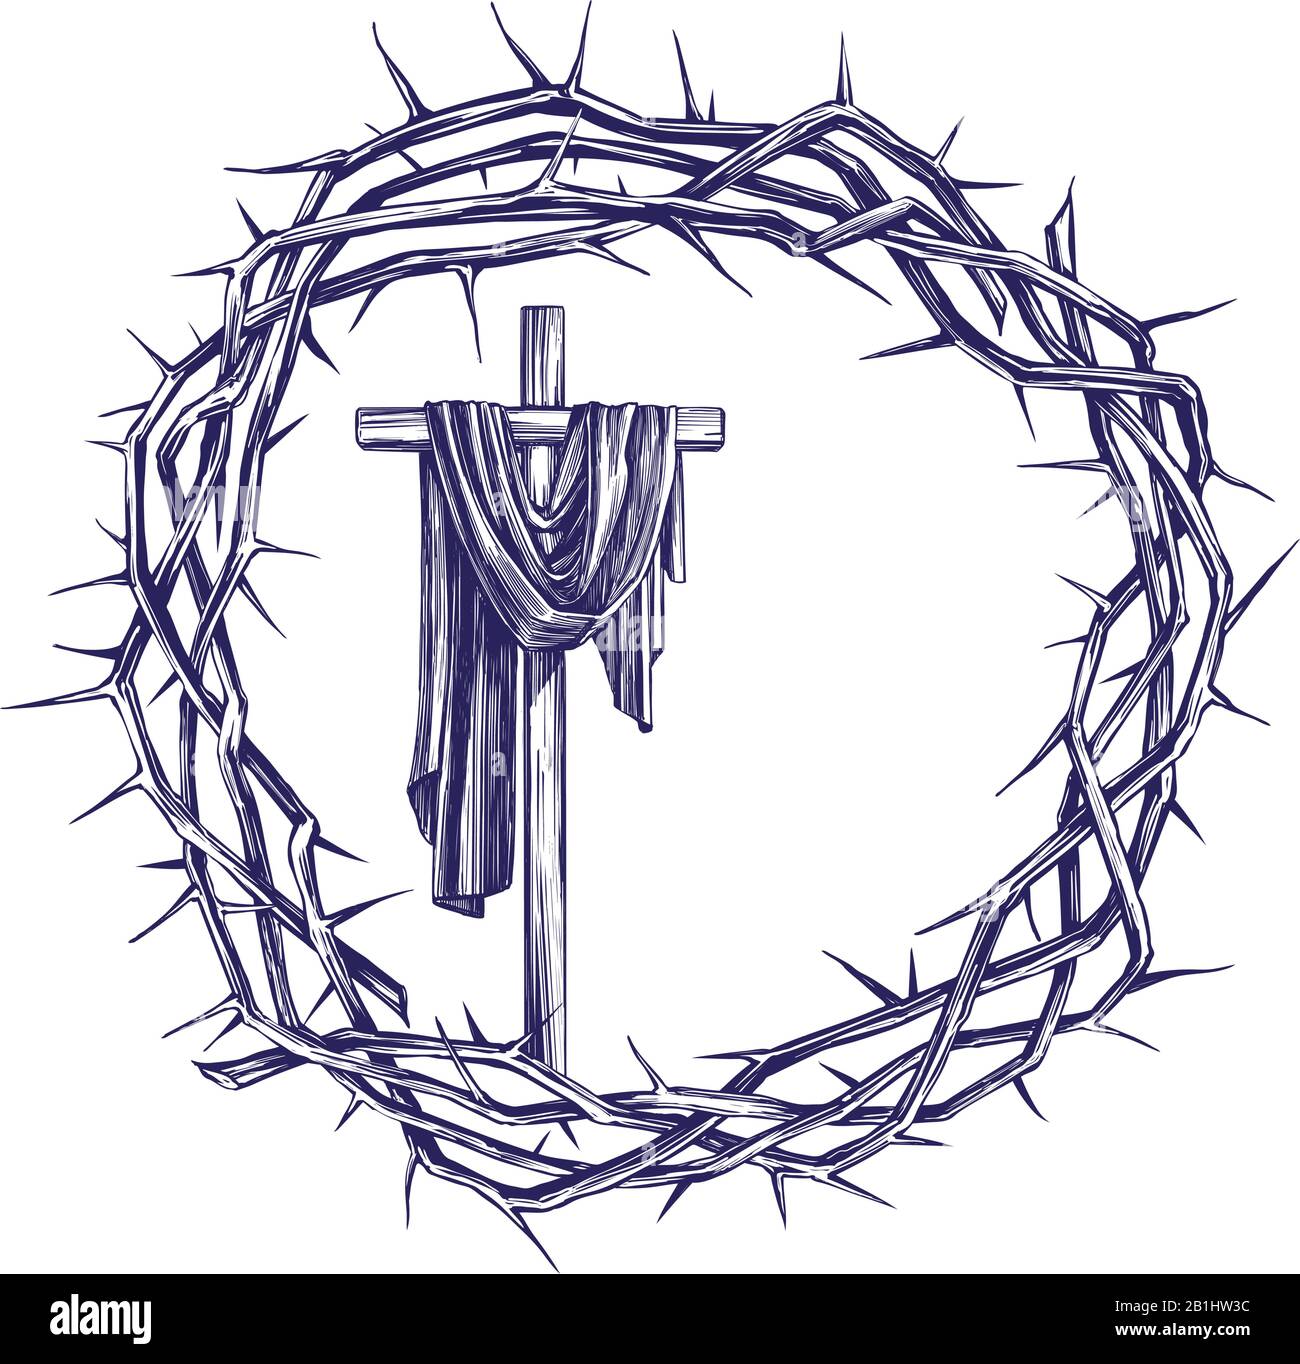 Croix et couronne d'épines, symbole religieux de pâques du christianisme dessin vectoriel dessiné à la main. Illustration de Vecteur